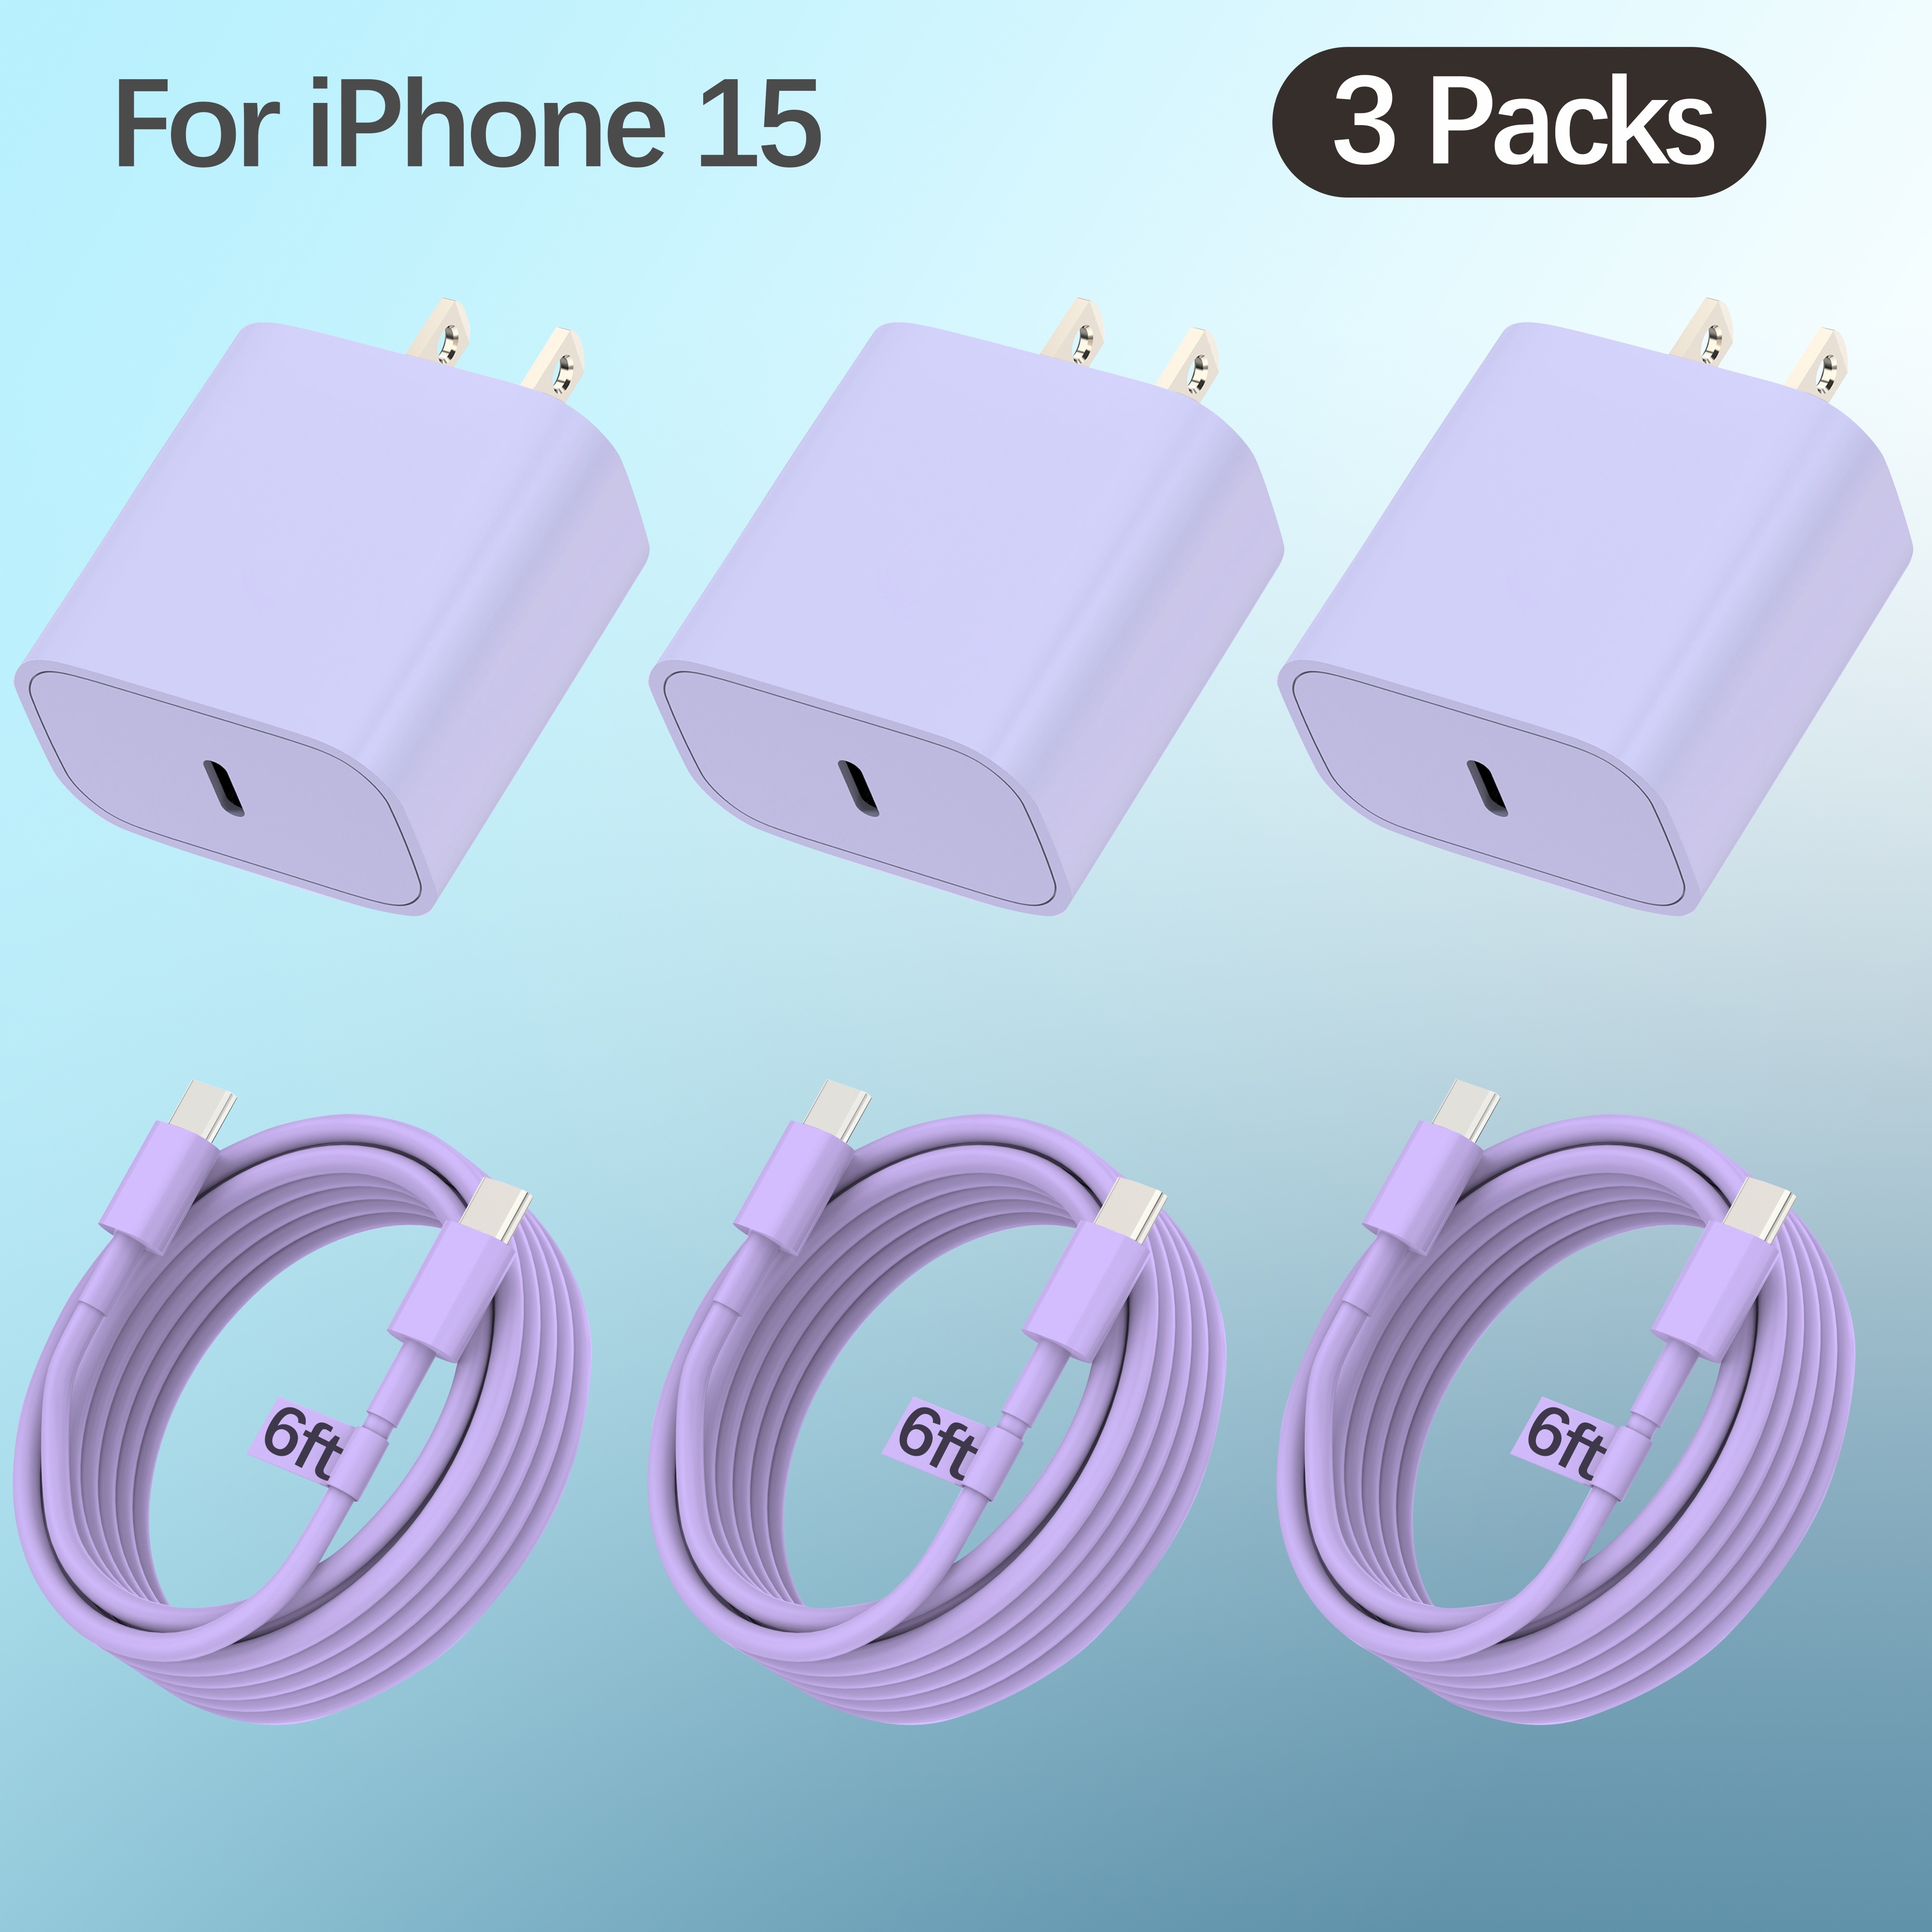 Cargador para iPhone 15, cargador rápido para iPad Pro con cable USB C de  6.6 pies, cargador USB C de 20 W para iPhone 15/15 Pro/Pro Max/Plus, iPad